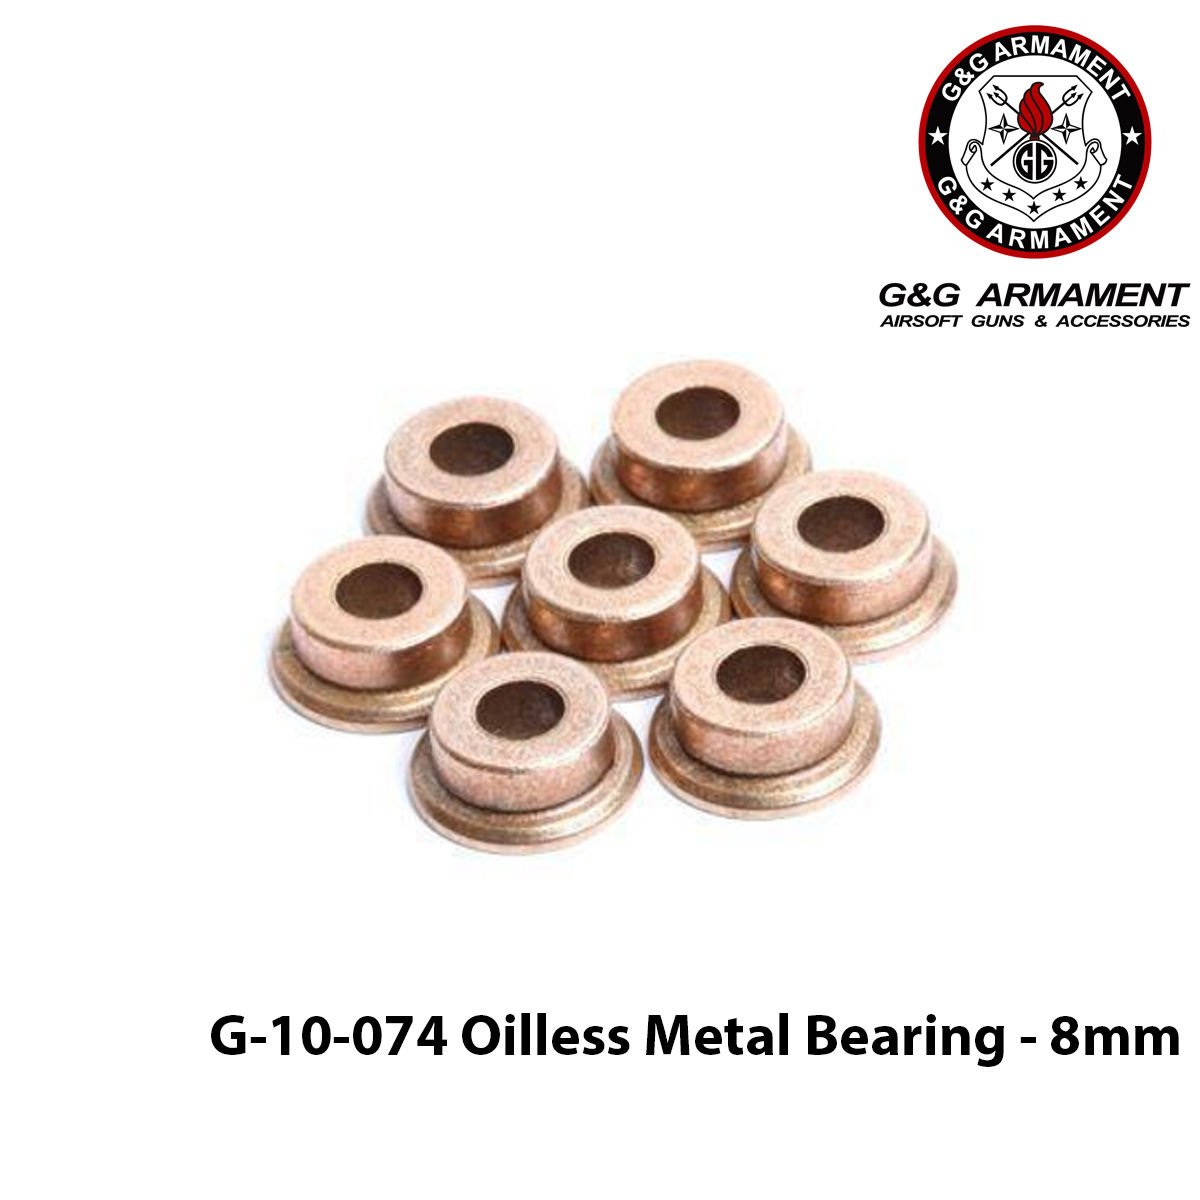 G-10-074 Oilless Metal Bearing - 8mm